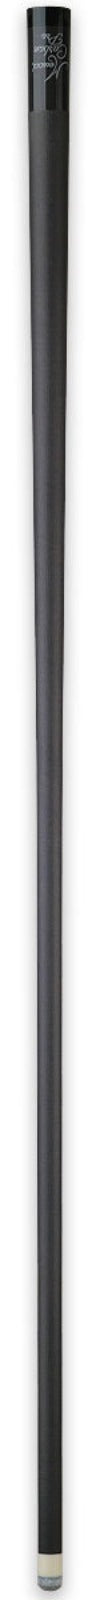 Meucci Carbon Fiber Pro Shaft - 12.60mm -Meucci